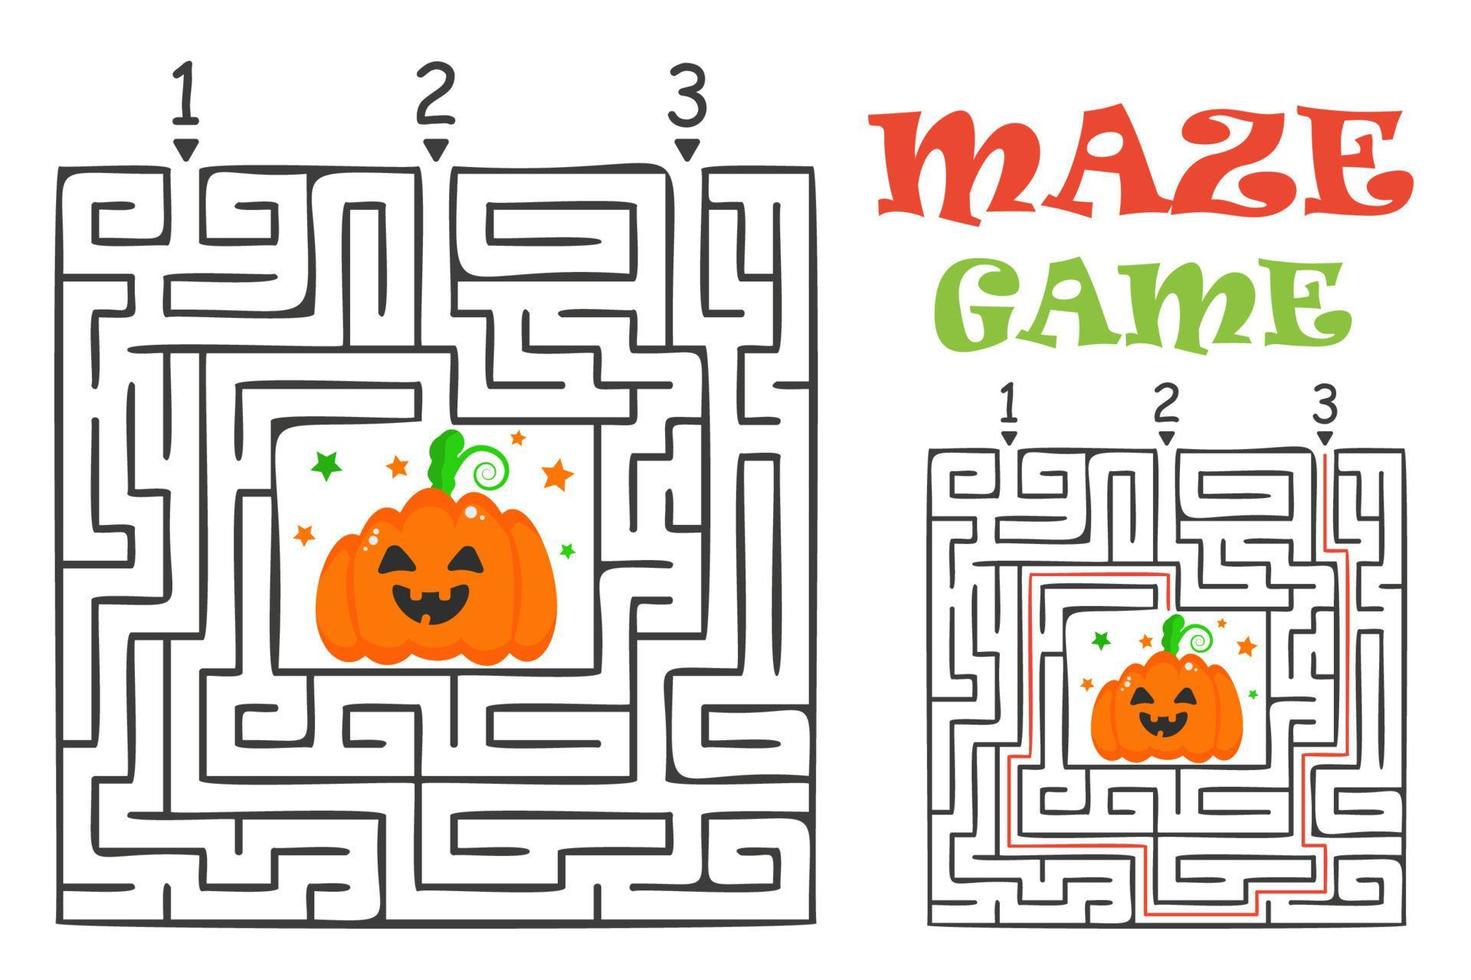 jogo labirinto de labirinto retangular de halloween para crianças. enigma da lógica do labirinto. três entradas e um caminho certo a seguir. ilustração em vetor plana isolada no fundo branco.